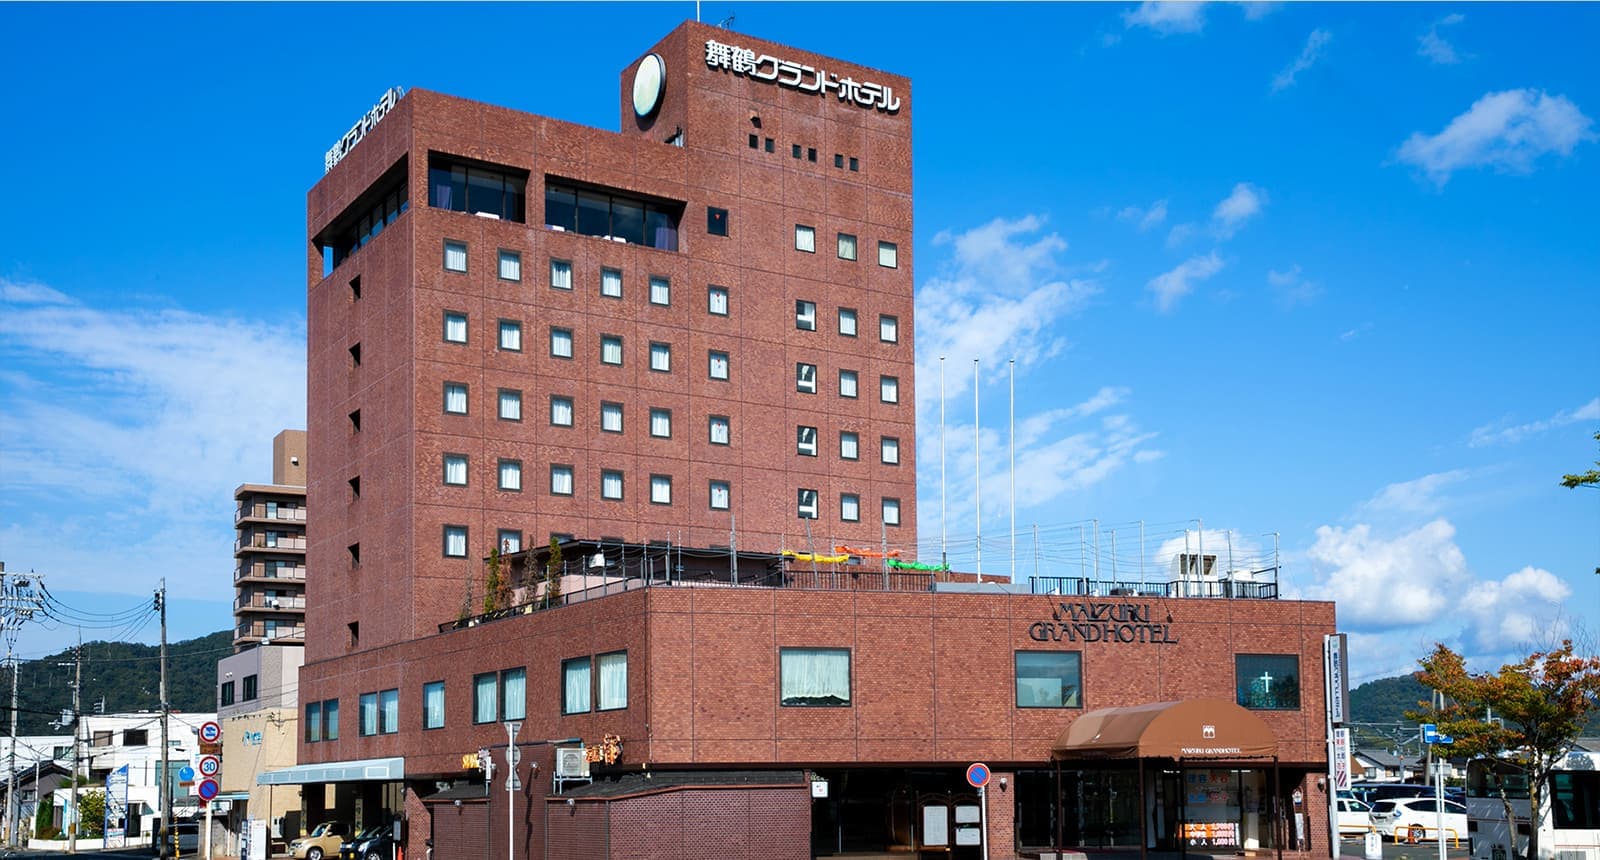 Maizuru Grand Hotel